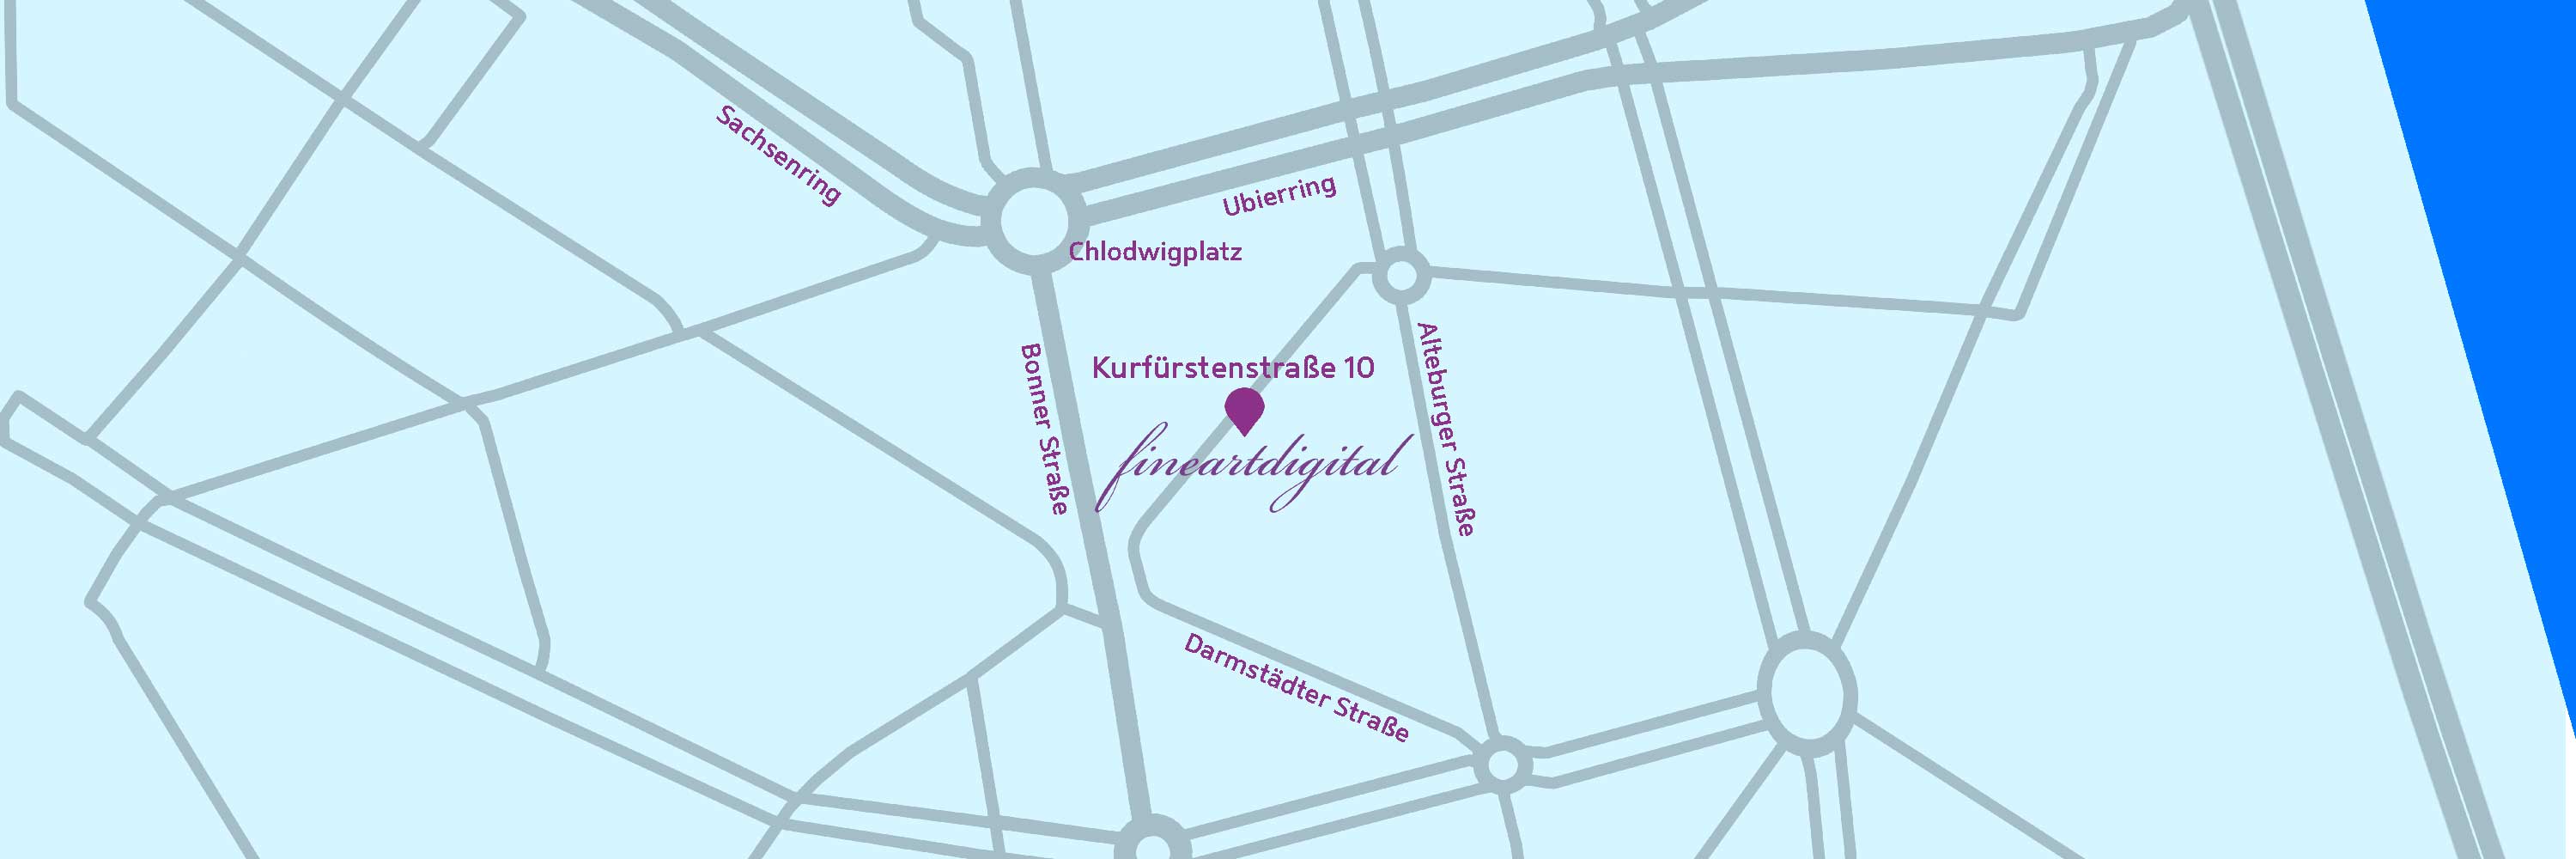 fineartdigital Anfahrskizze und Adresse: Kurfürstenstr. 10, 50678 Köln